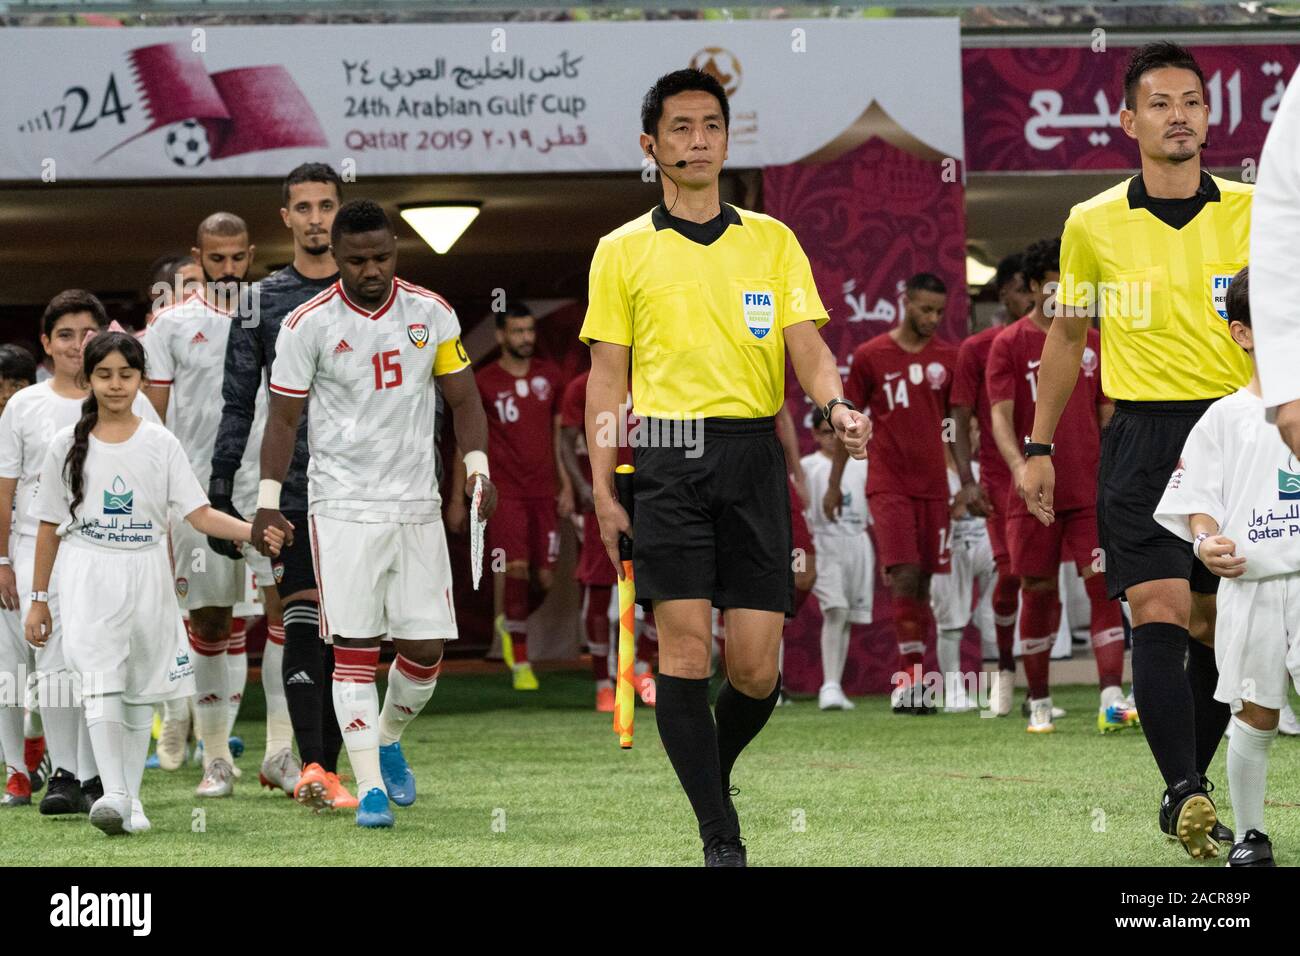 Più di 43.000 spettatori hanno gremito di Doha Khalifa International Stadium di testimoniare il Qatar sconfitta degli Emirati Arabi Uniti 4-2 in una partita emozionante per la ventiquattresima Golfo Arabico Cup. In seguito alla loro vittoria il lunedì, Asian champions e ospita il Qatar avanzate per le semifinali della manifestazione regionale, dove incontreranno in Arabia Saudita Foto Stock